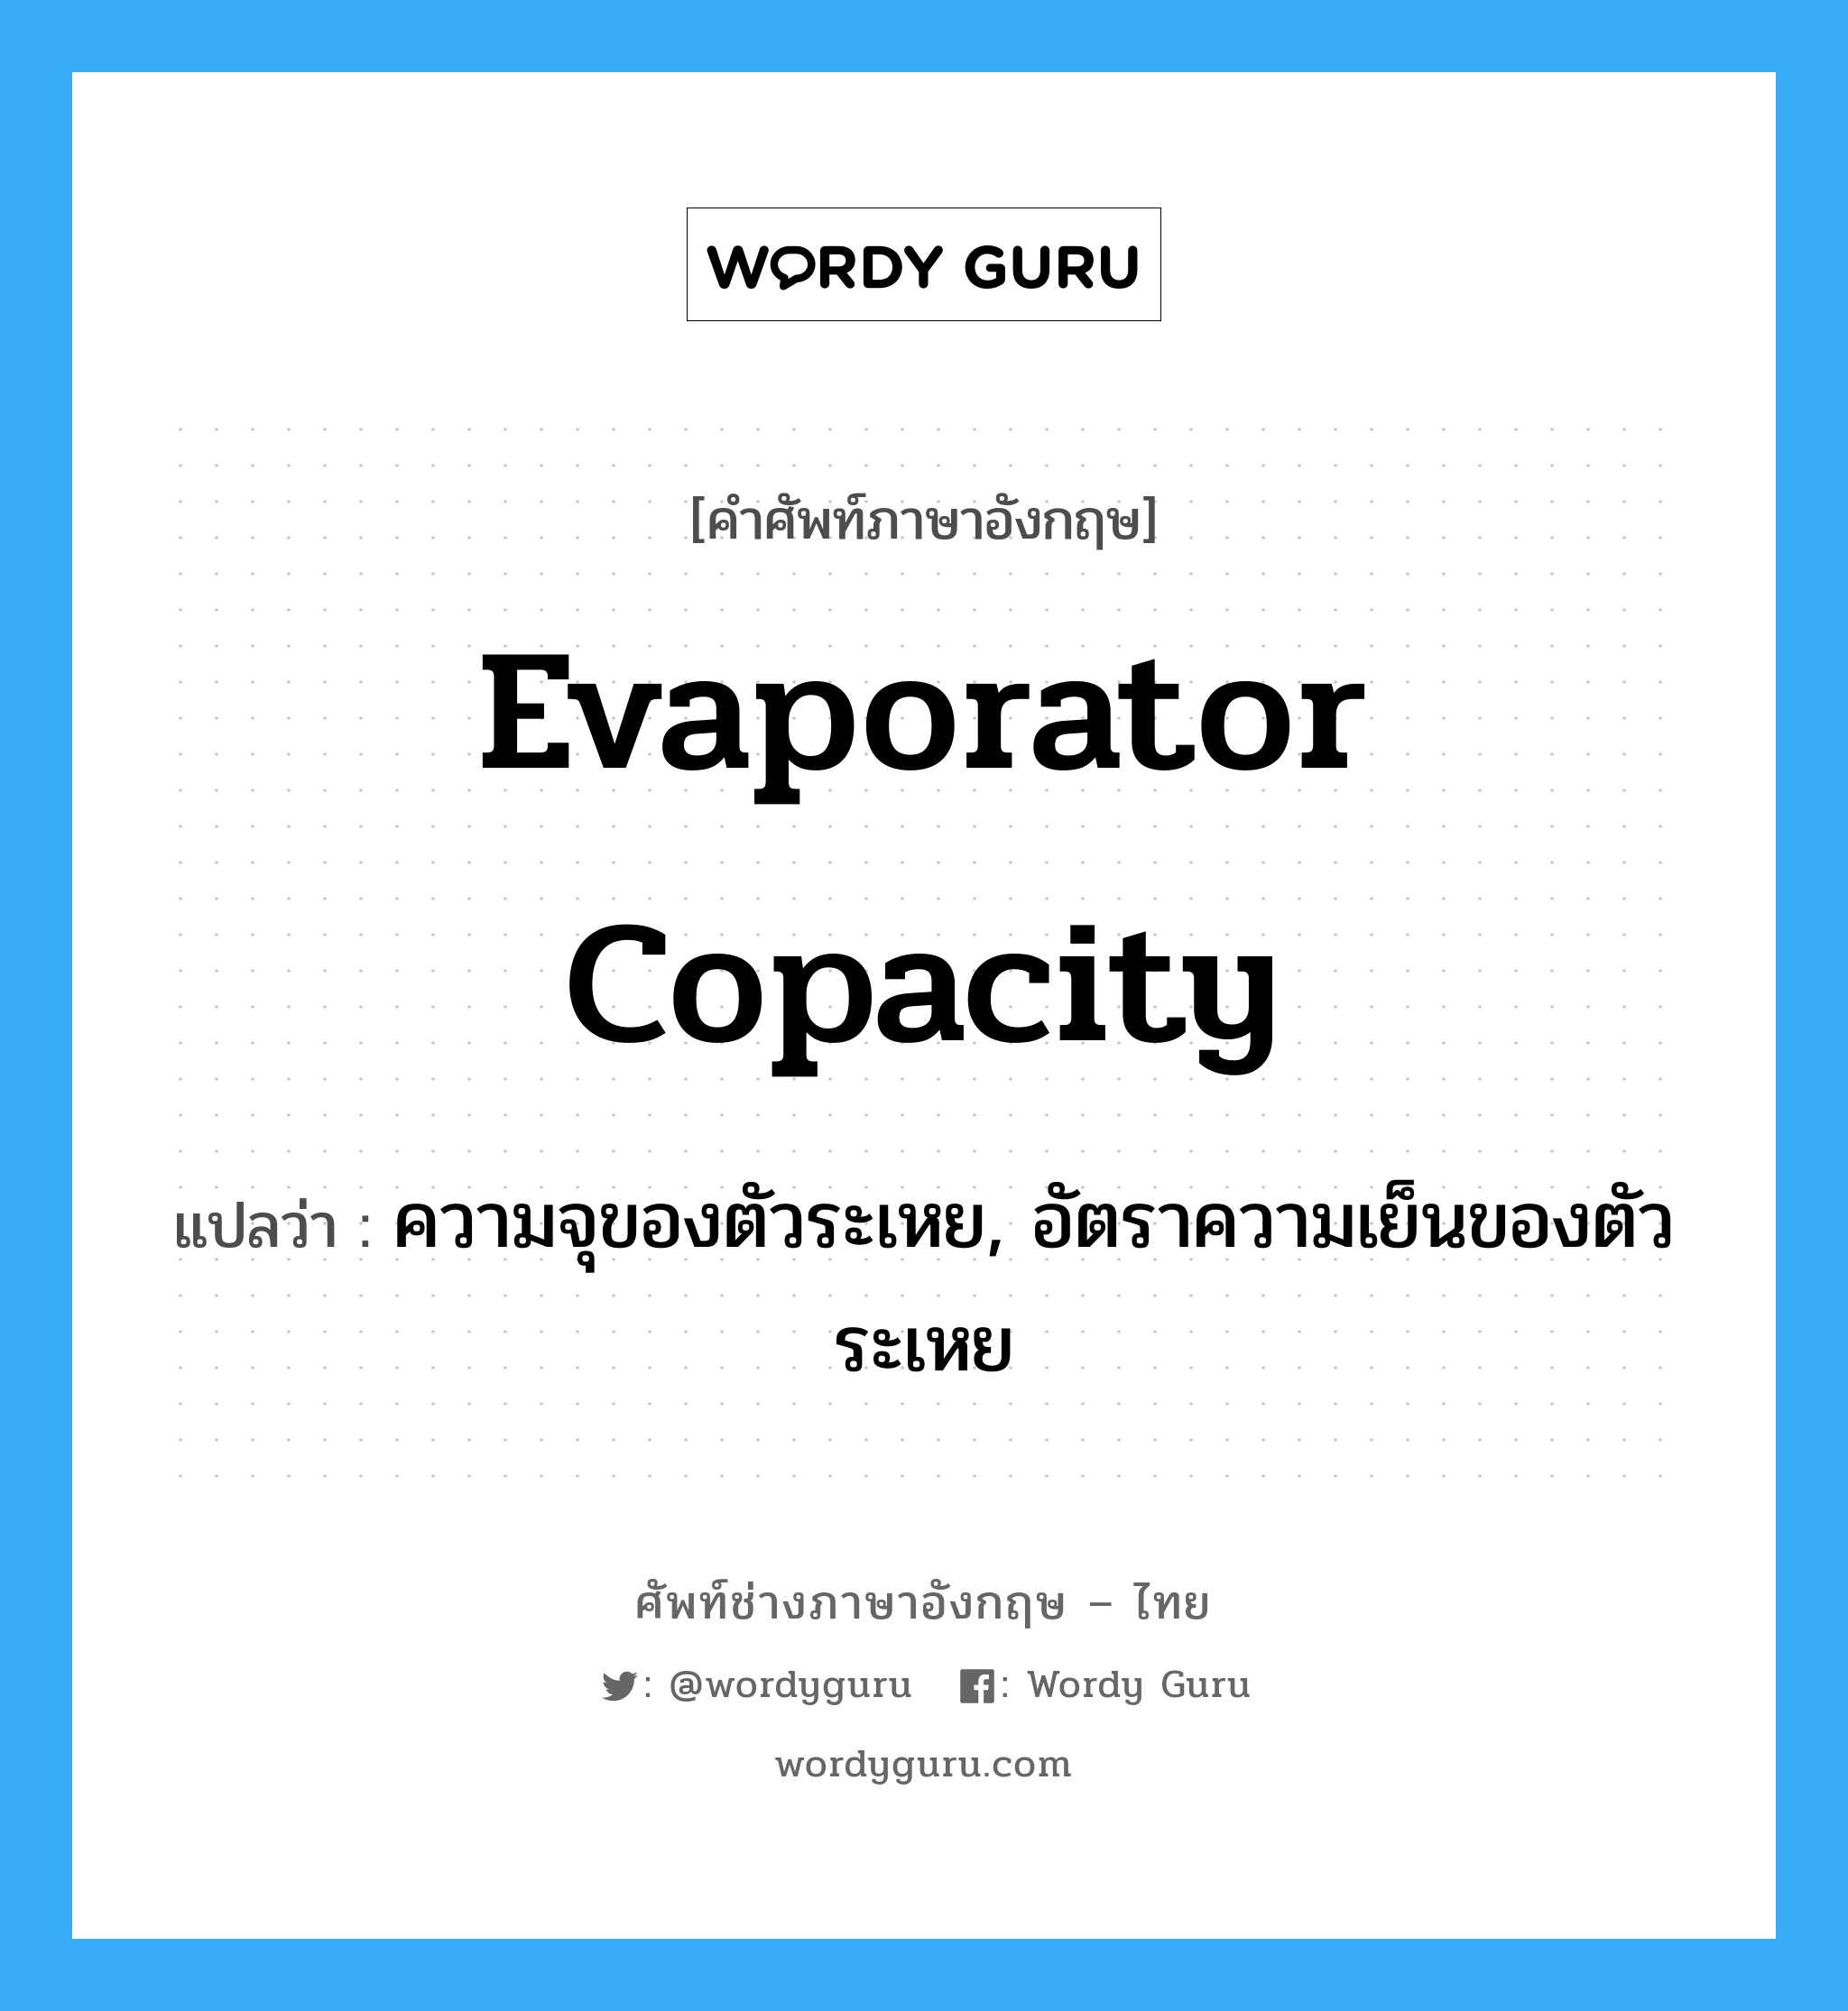 evaporator copacity แปลว่า?, คำศัพท์ช่างภาษาอังกฤษ - ไทย evaporator copacity คำศัพท์ภาษาอังกฤษ evaporator copacity แปลว่า ความจุของตัวระเหย, อัตราความเย็นของตัวระเหย